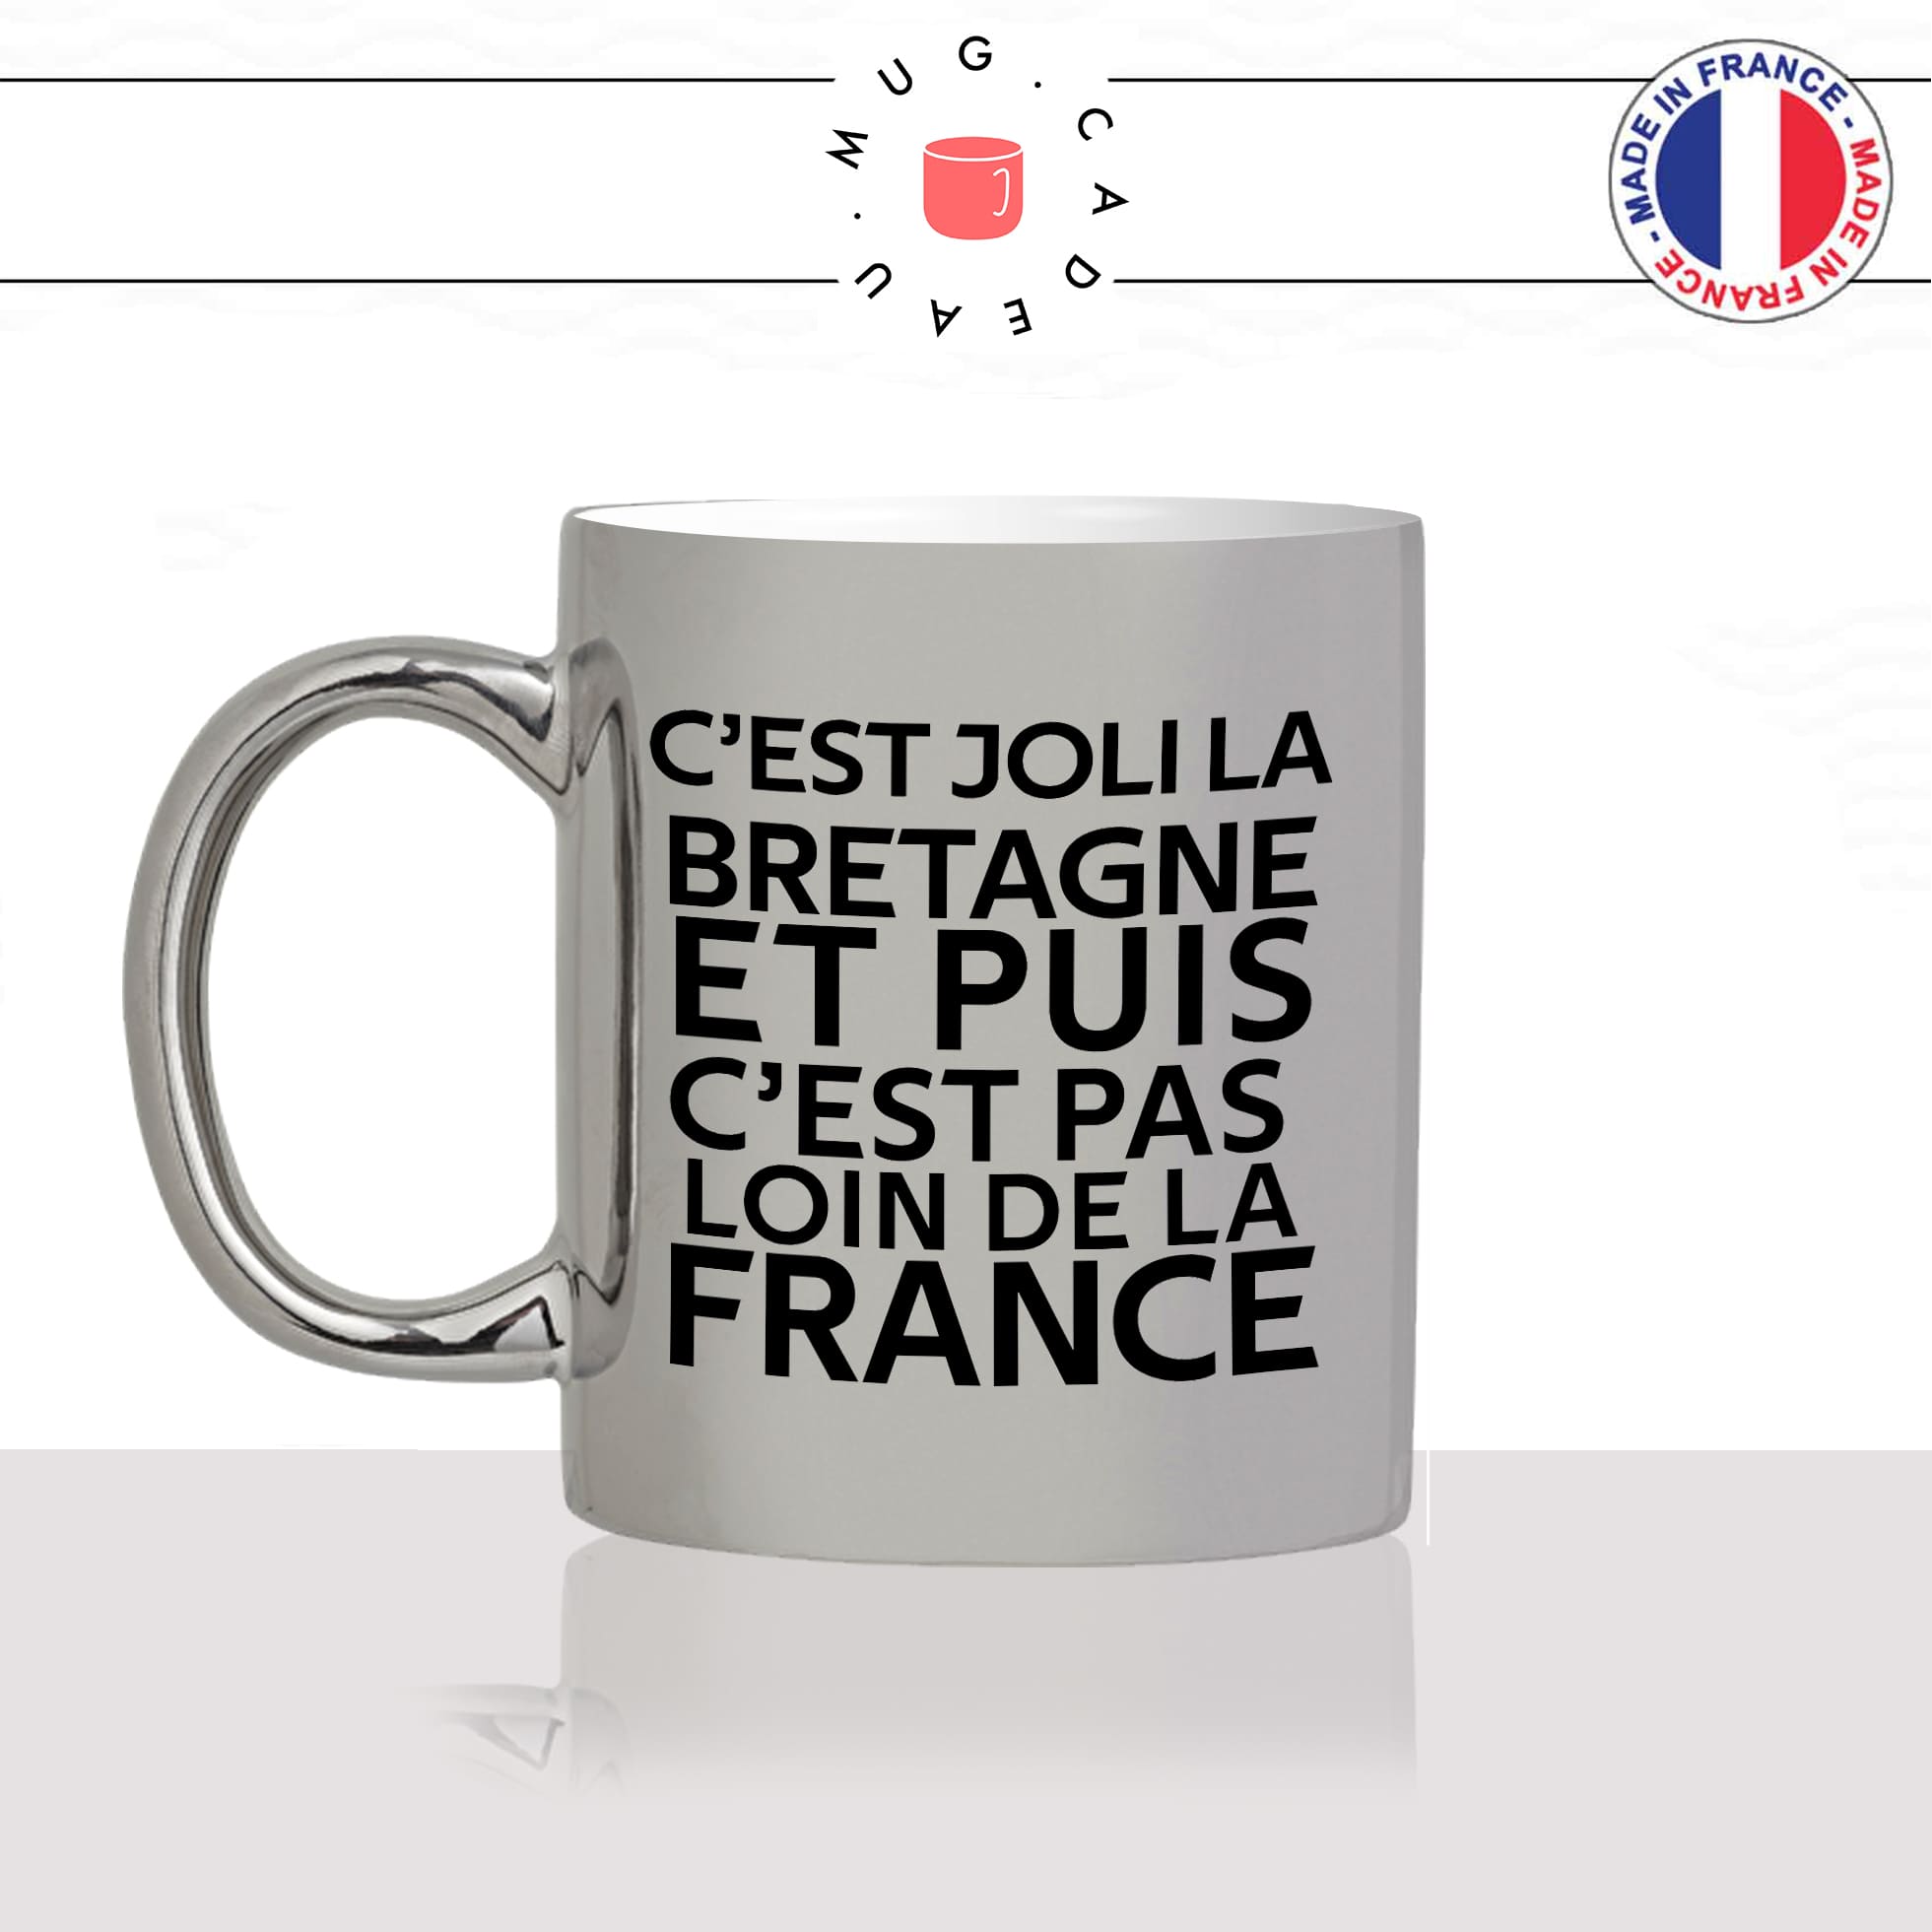 mug-tasse-argenté-argent-gris-silver-citation-phrase-culte-coluche-cest-joli-la-bretagne-france-breton-humour-fun-idée-cadeau-originale-cool